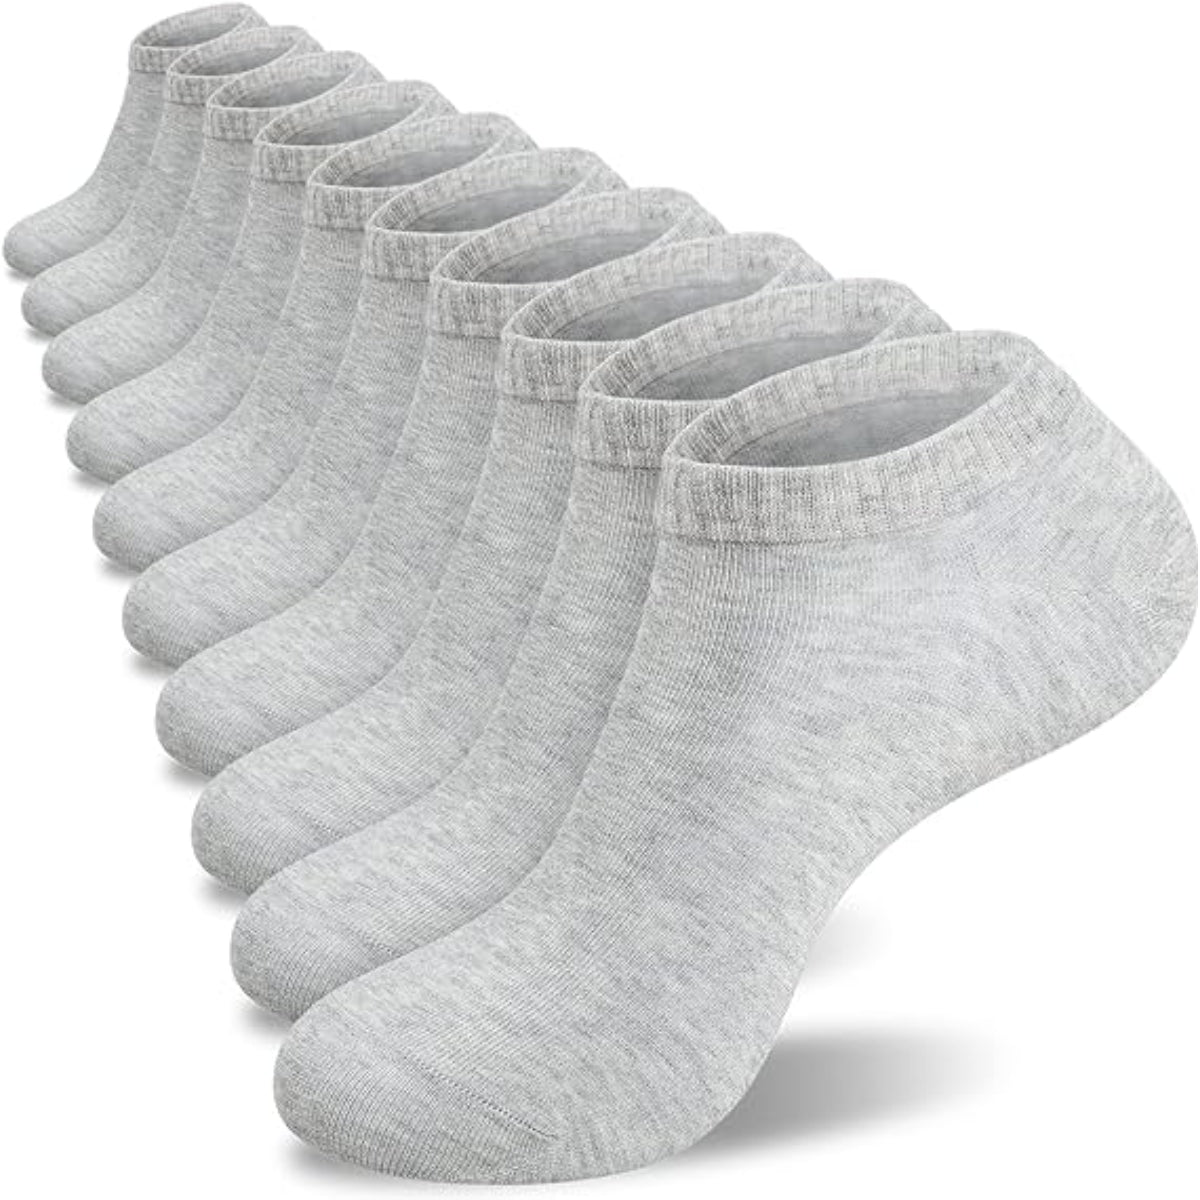 Racotex.com - Calcetines 100% algodón precio fábrica 